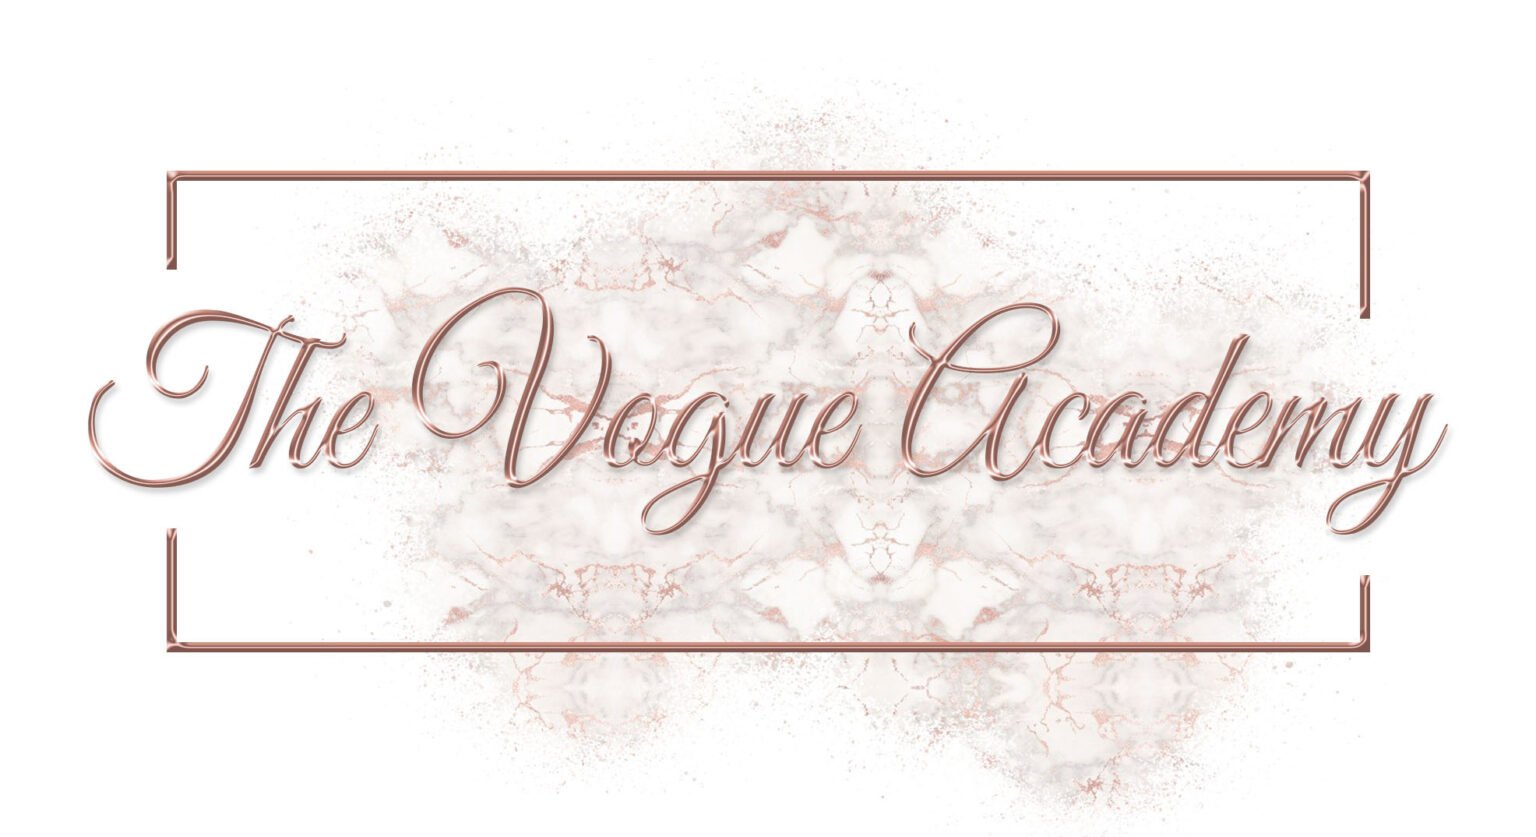 The Vogue Academy logo